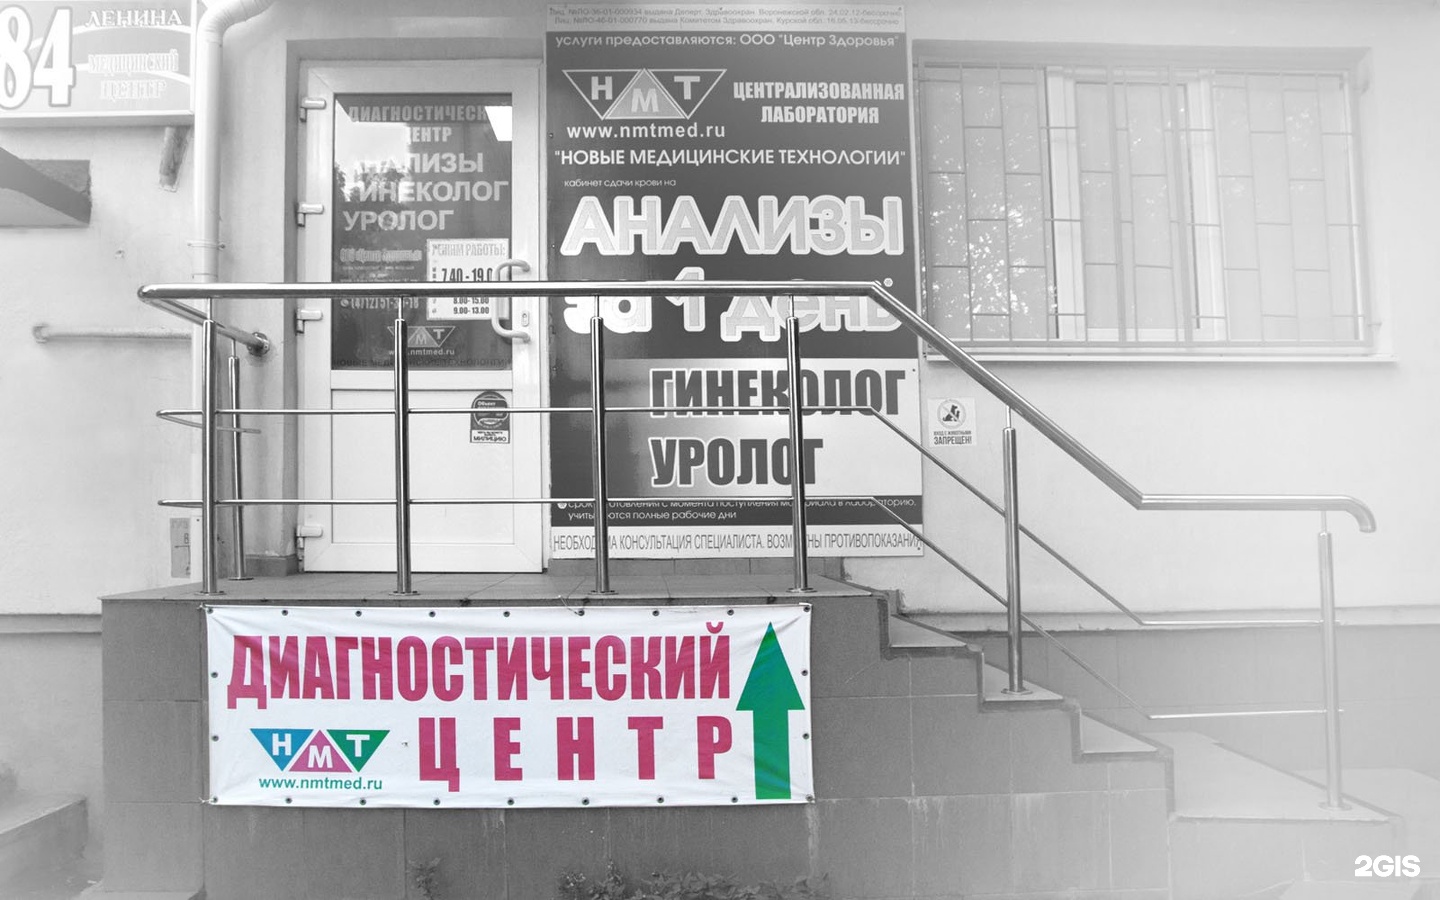 Аптека Ленина 202 Томск